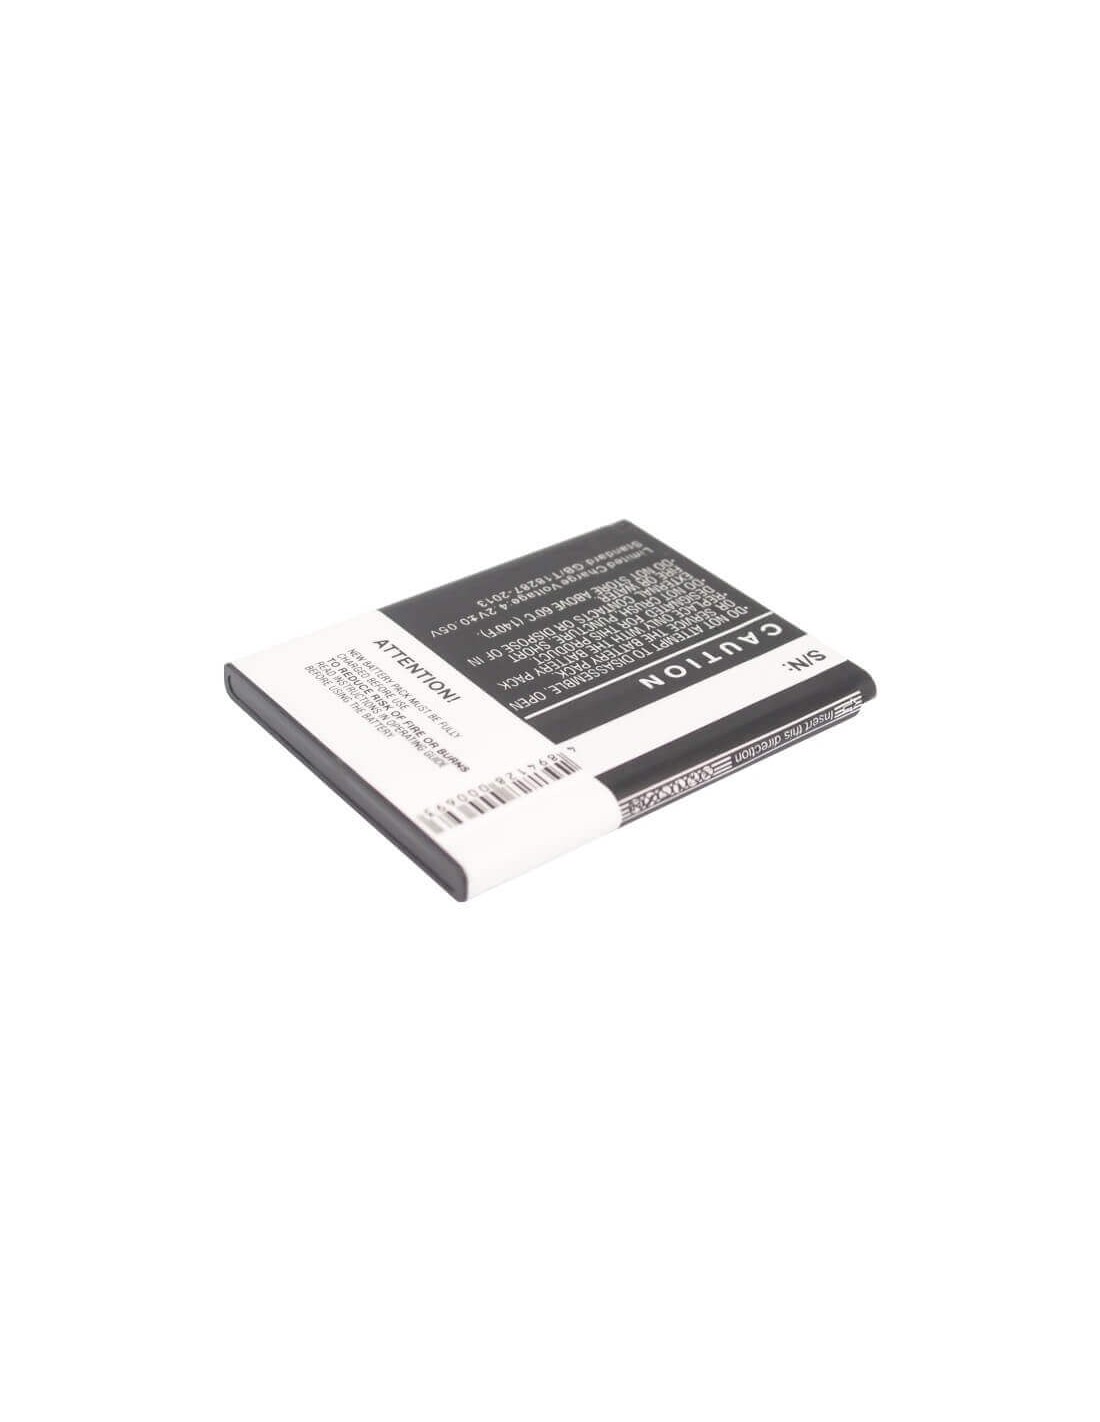 Battery for Sony Ericsson Z800, V800i, V800 3.7V, 900mAh - 3.33Wh